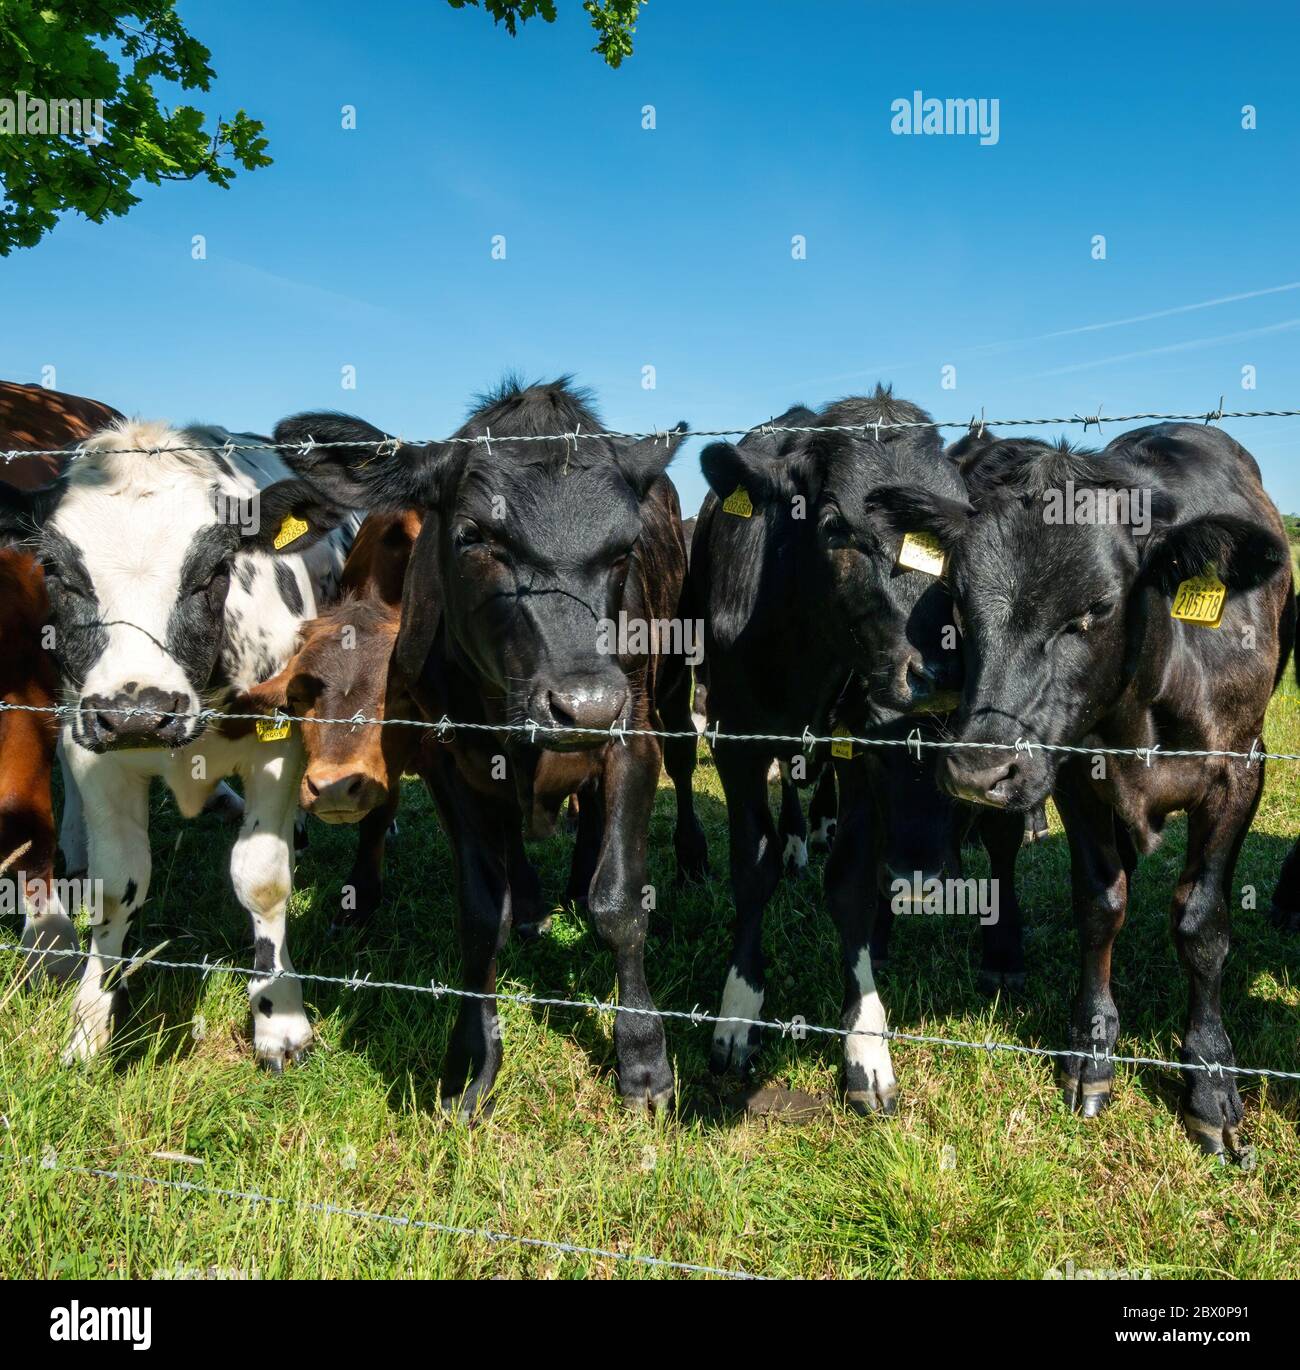 Un troupeau de jeunes vaches curieuses, noires et blanches (dont British Blue) regardant vers la caméra à travers la clôture barbelée, Leicestershire, Angleterre, Royaume-Uni Banque D'Images